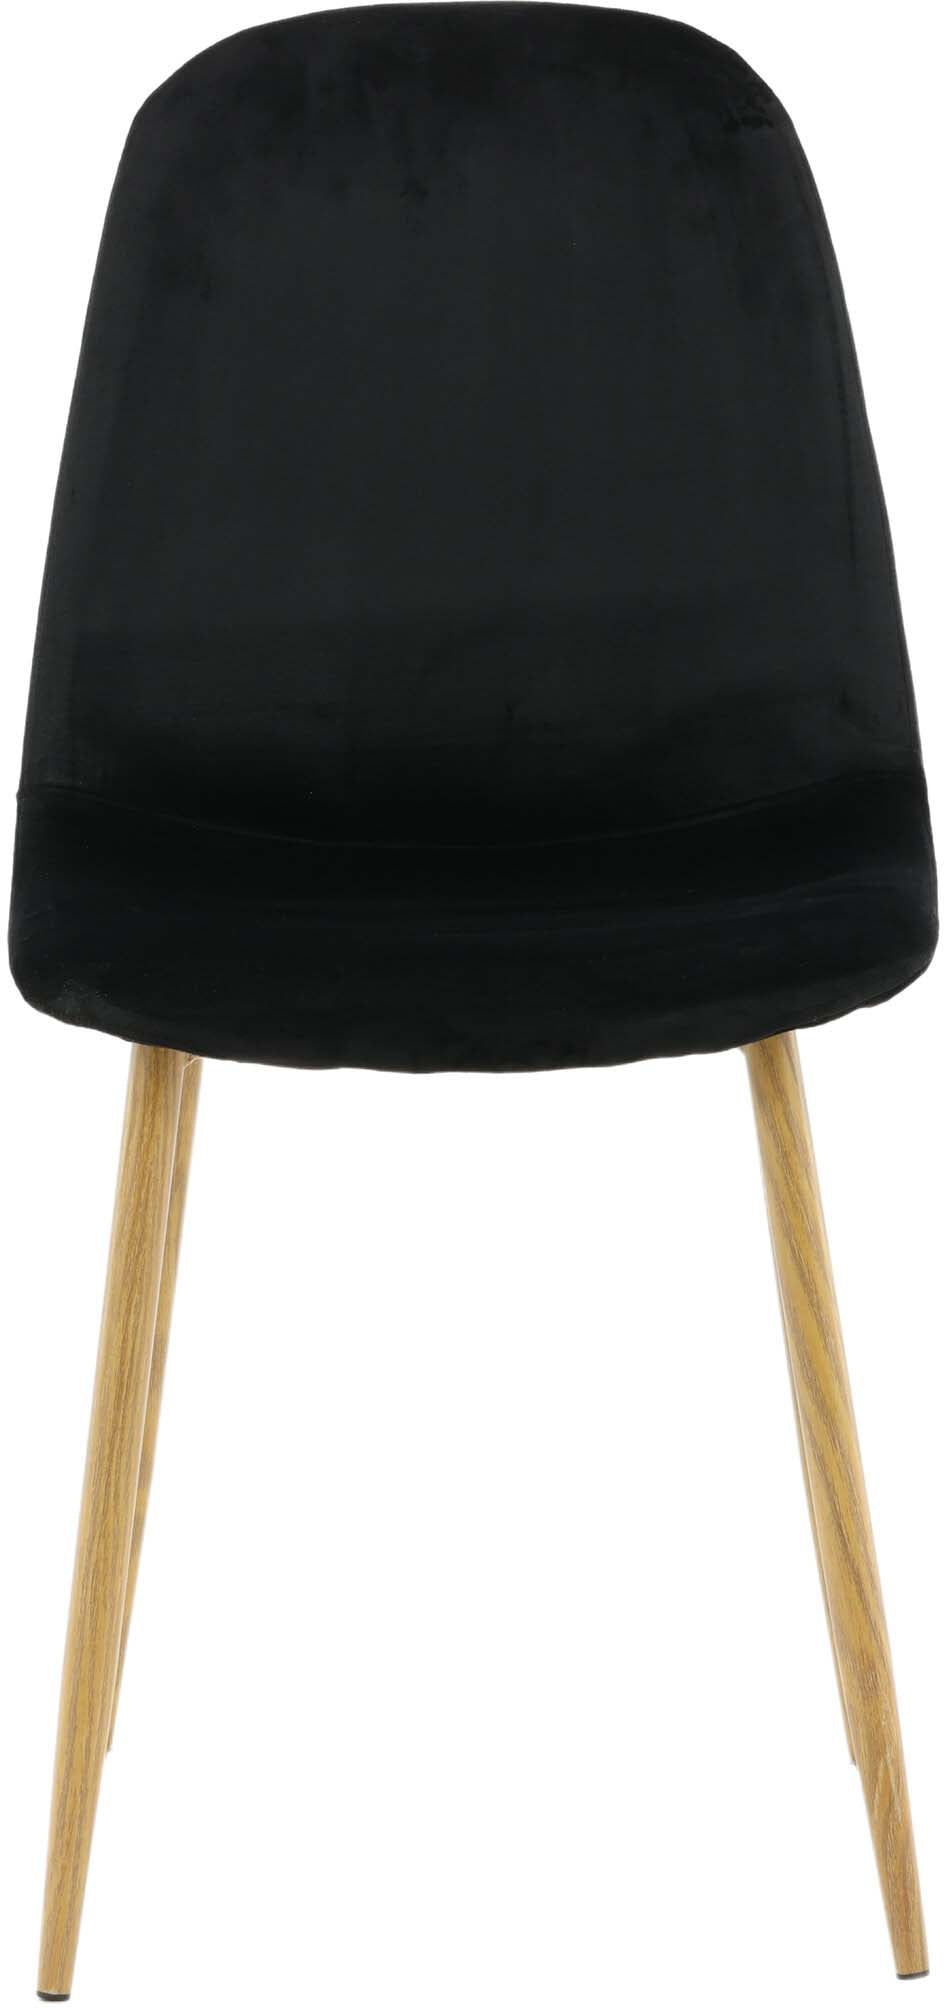 Polar Stuhl in Schwarz/Eicheimitat präsentiert im Onlineshop von KAQTU Design AG. Stuhl ist von Venture Home